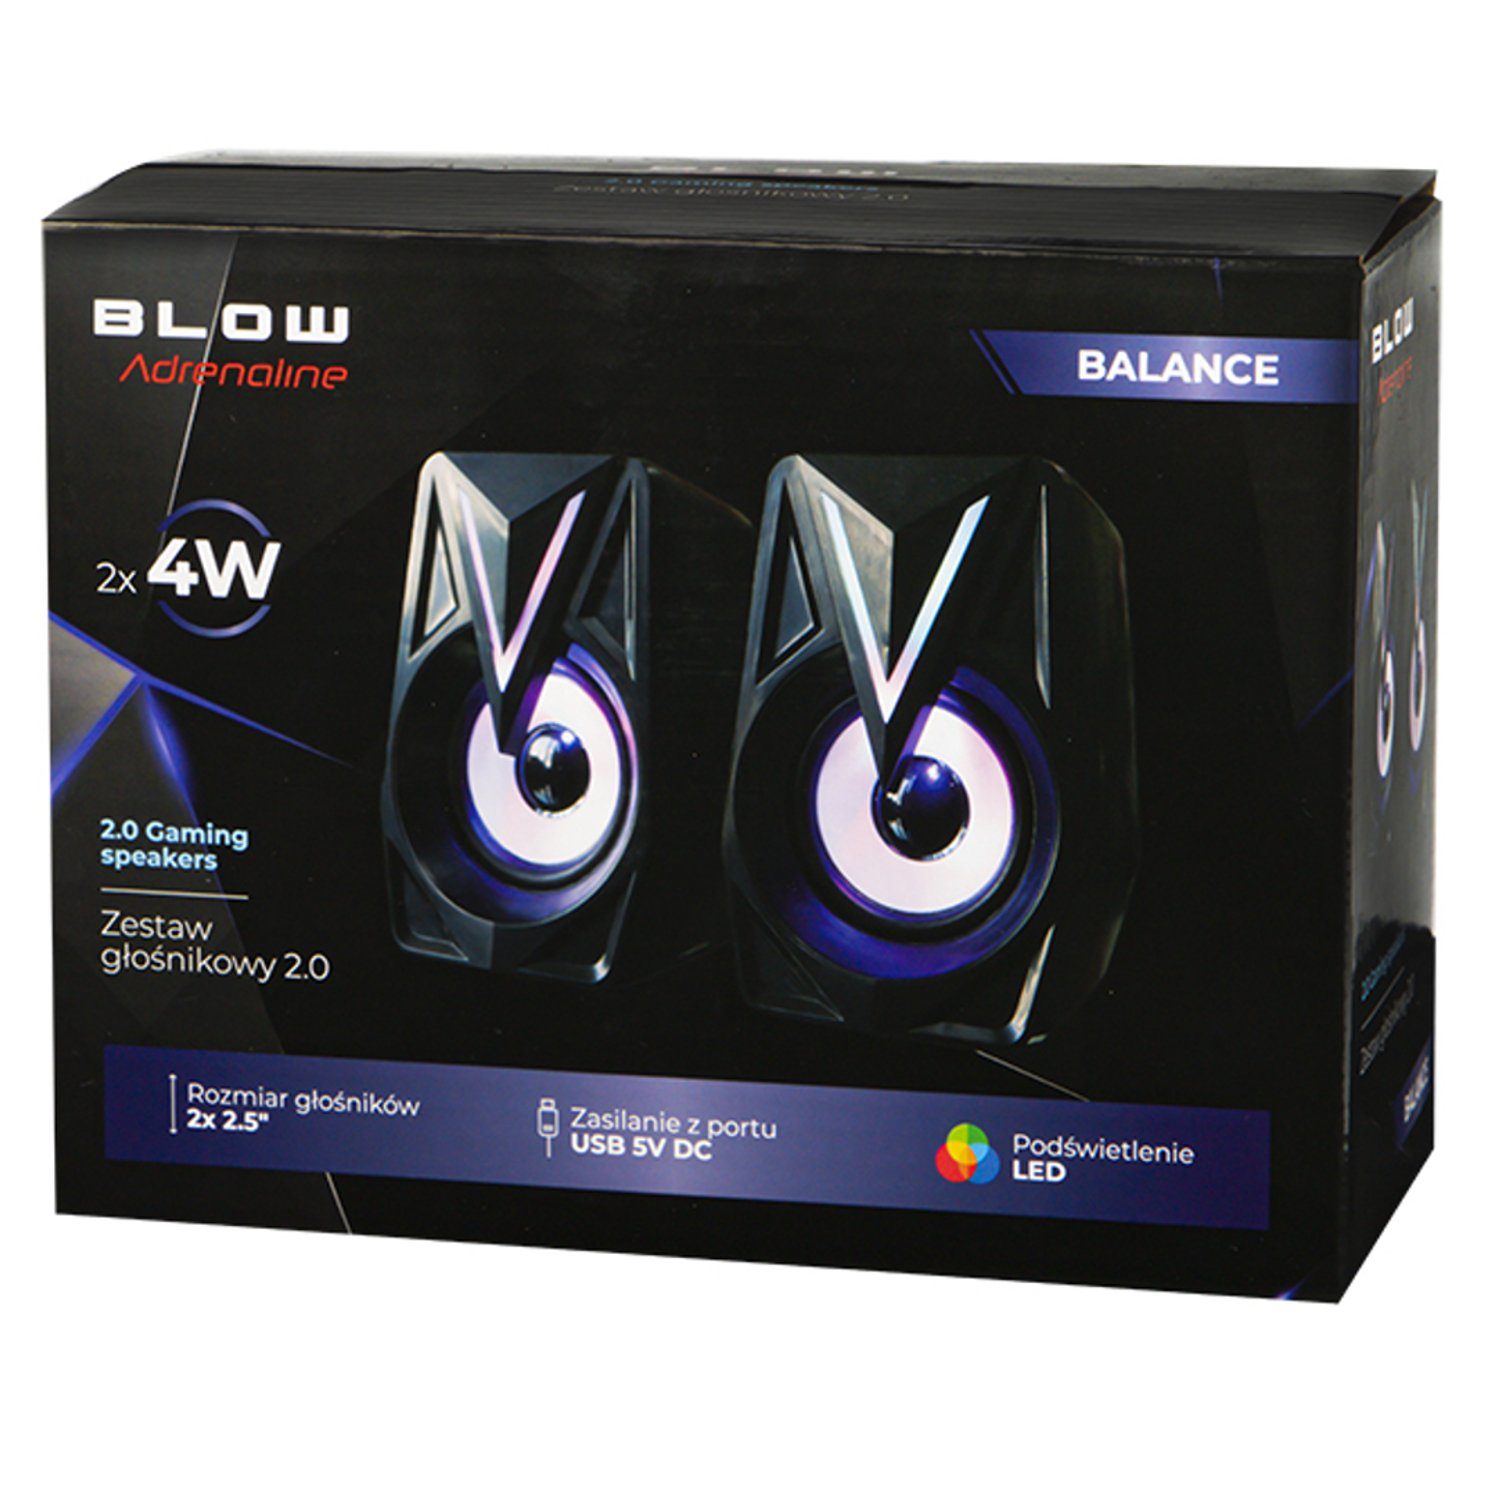 2.0 (8 BLOW Lautstärkeregelung, LED-Beleuchtung) Balance AUX-Anschluss, W, mehrfarbige PC-Lautsprecher